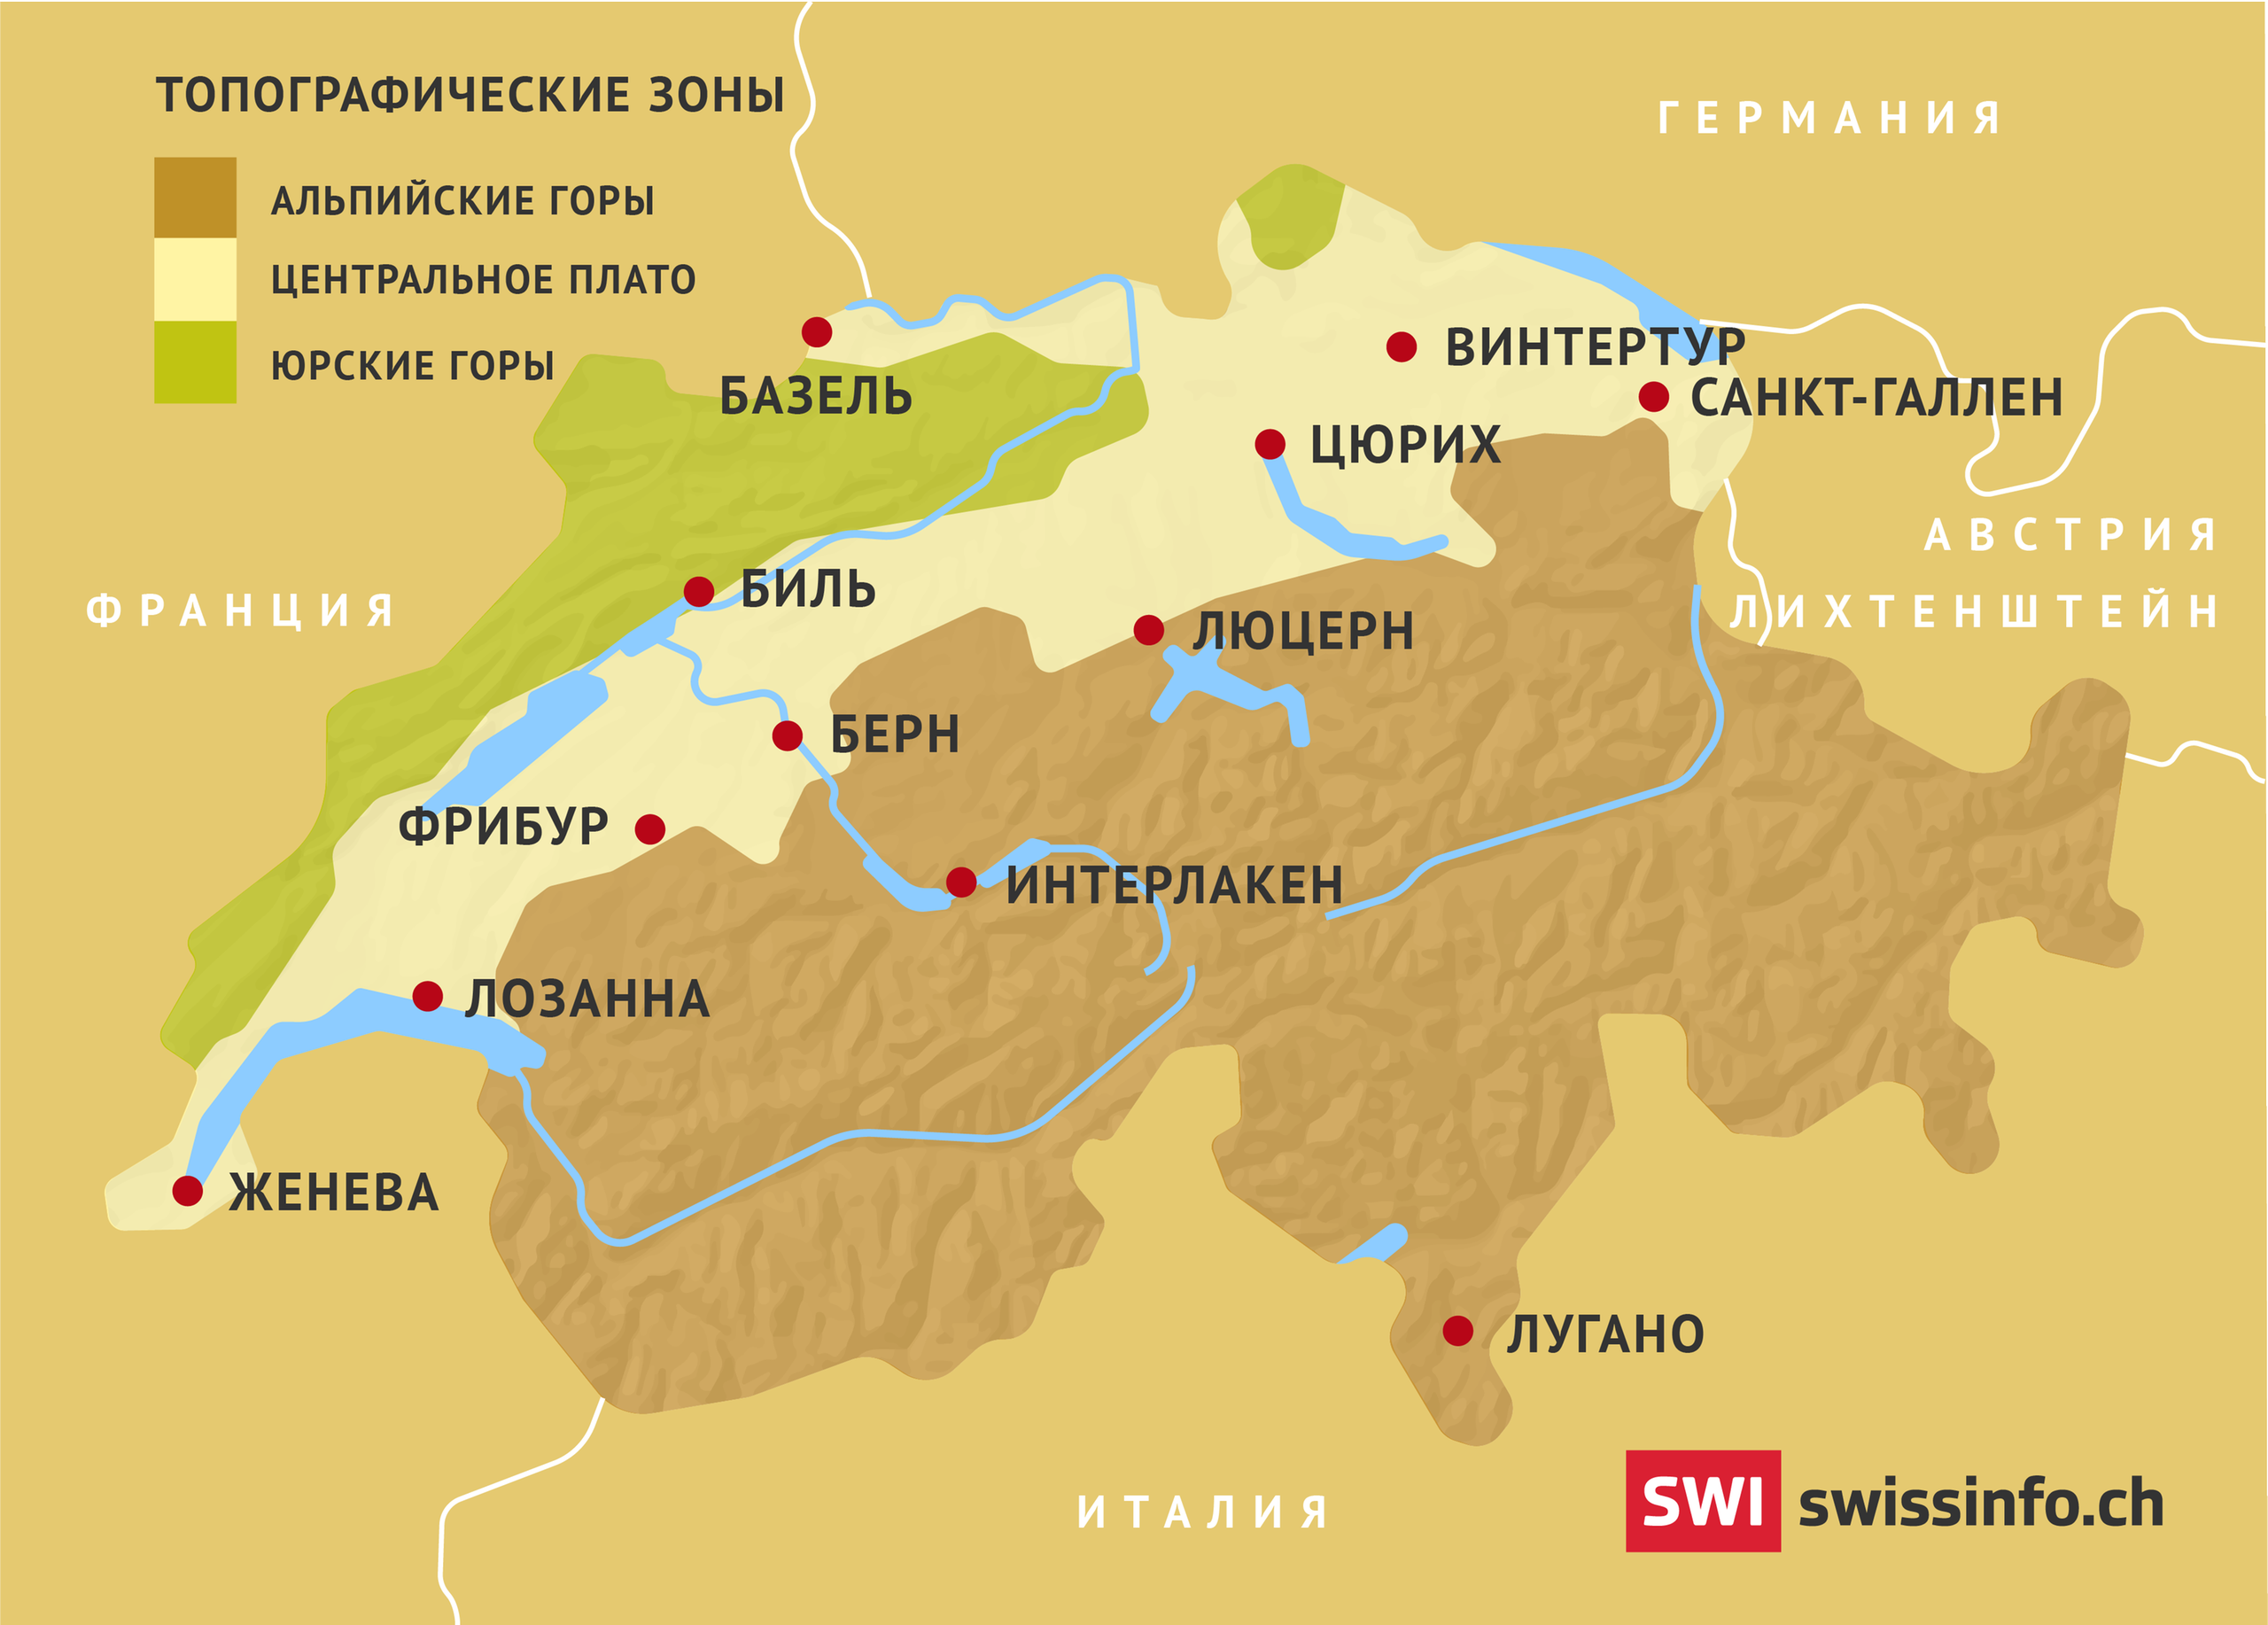 Карта Швейцарии на русском языке с городами и топографическими зонами. Страны, граничащие со Швейцарией.